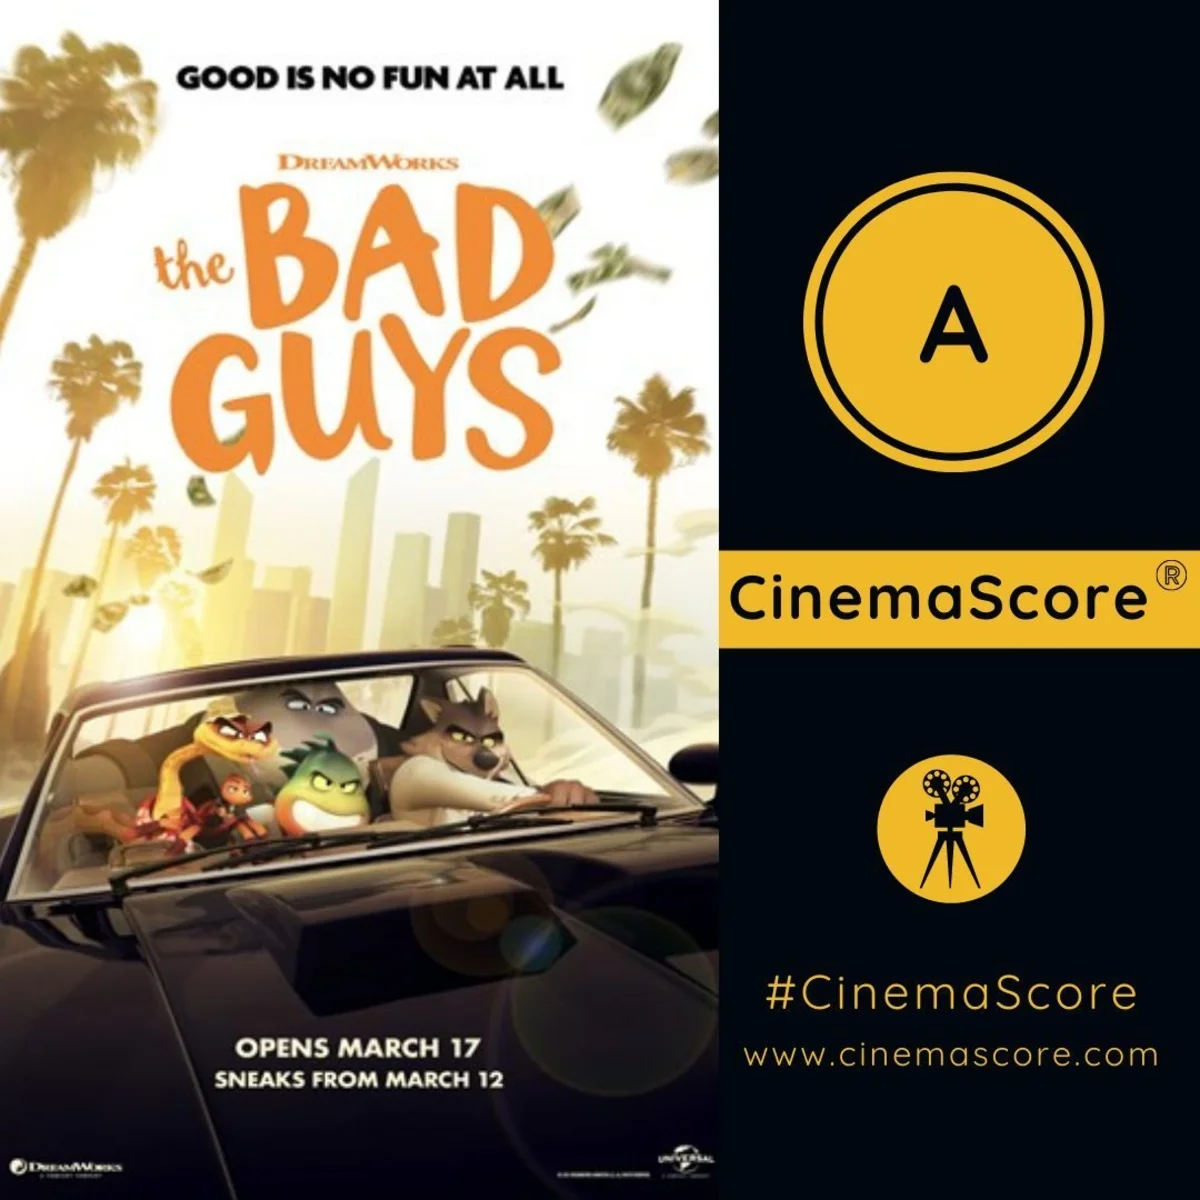 «Варяг» и новый фильм с Кейджем получили положительные оценки зрителей на CinemaScore - фото 3